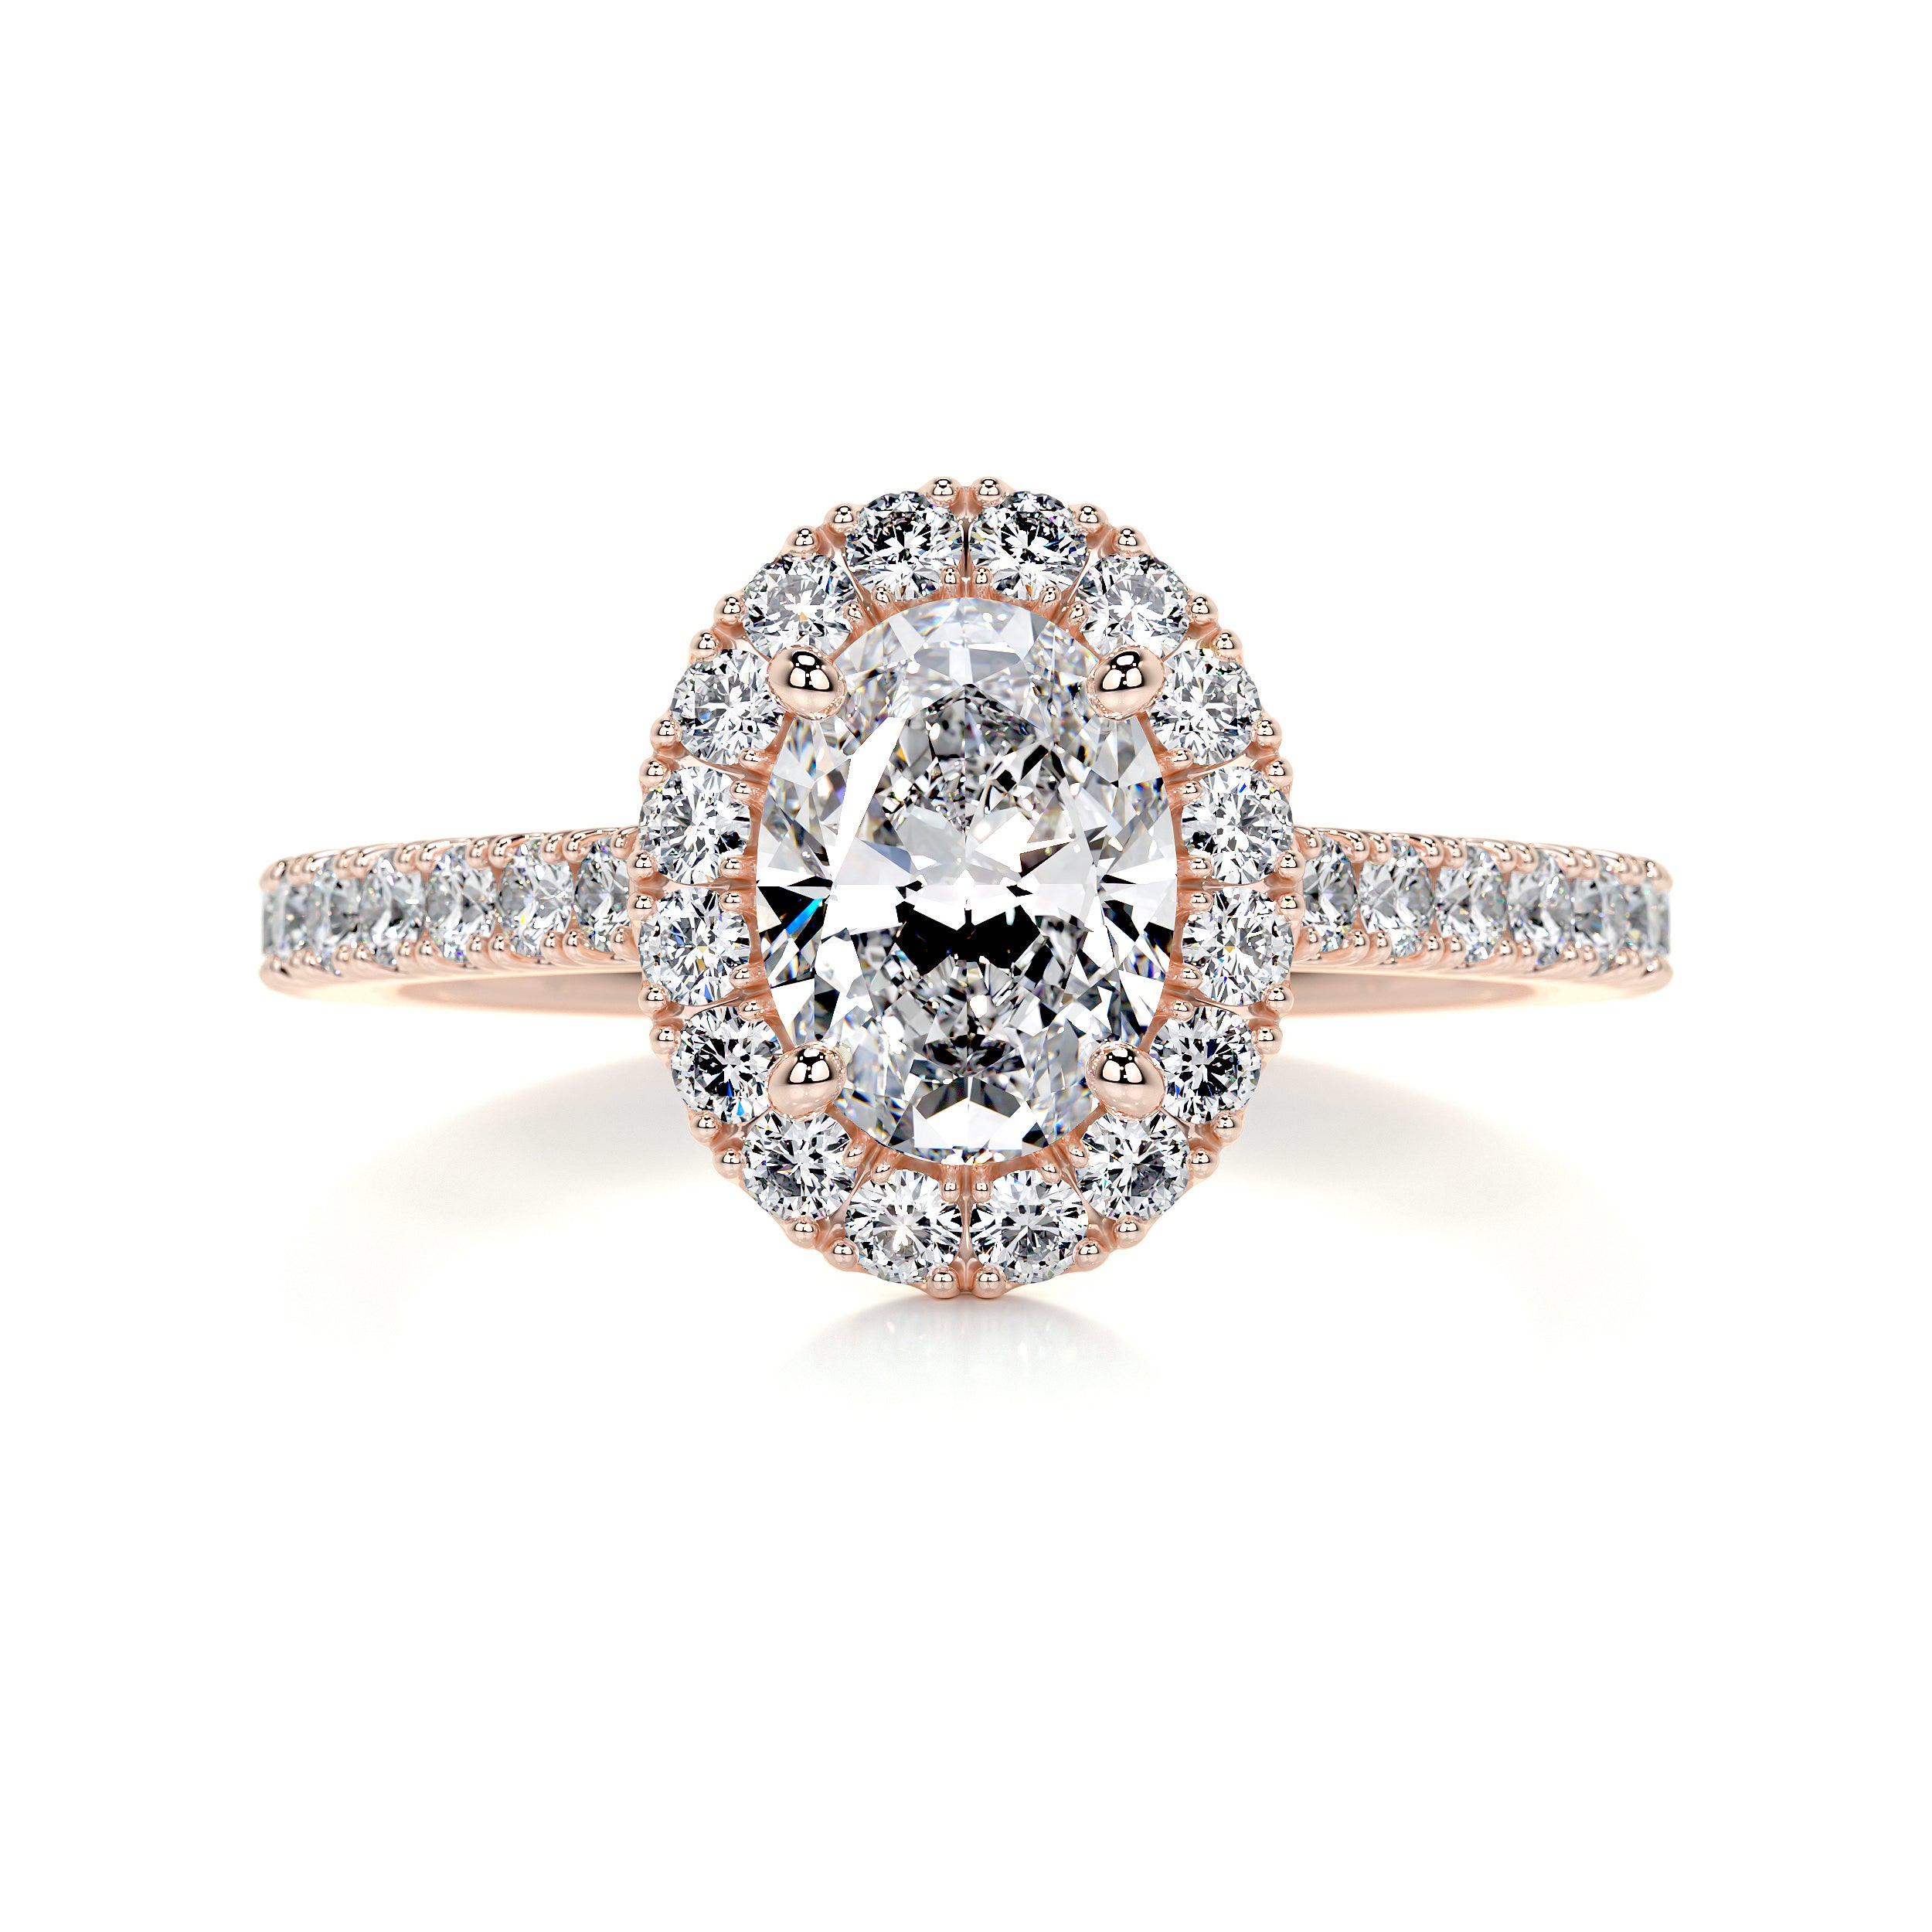 Maria Diamond Engagement Ring   (2 Carat) -14K Rose Gold